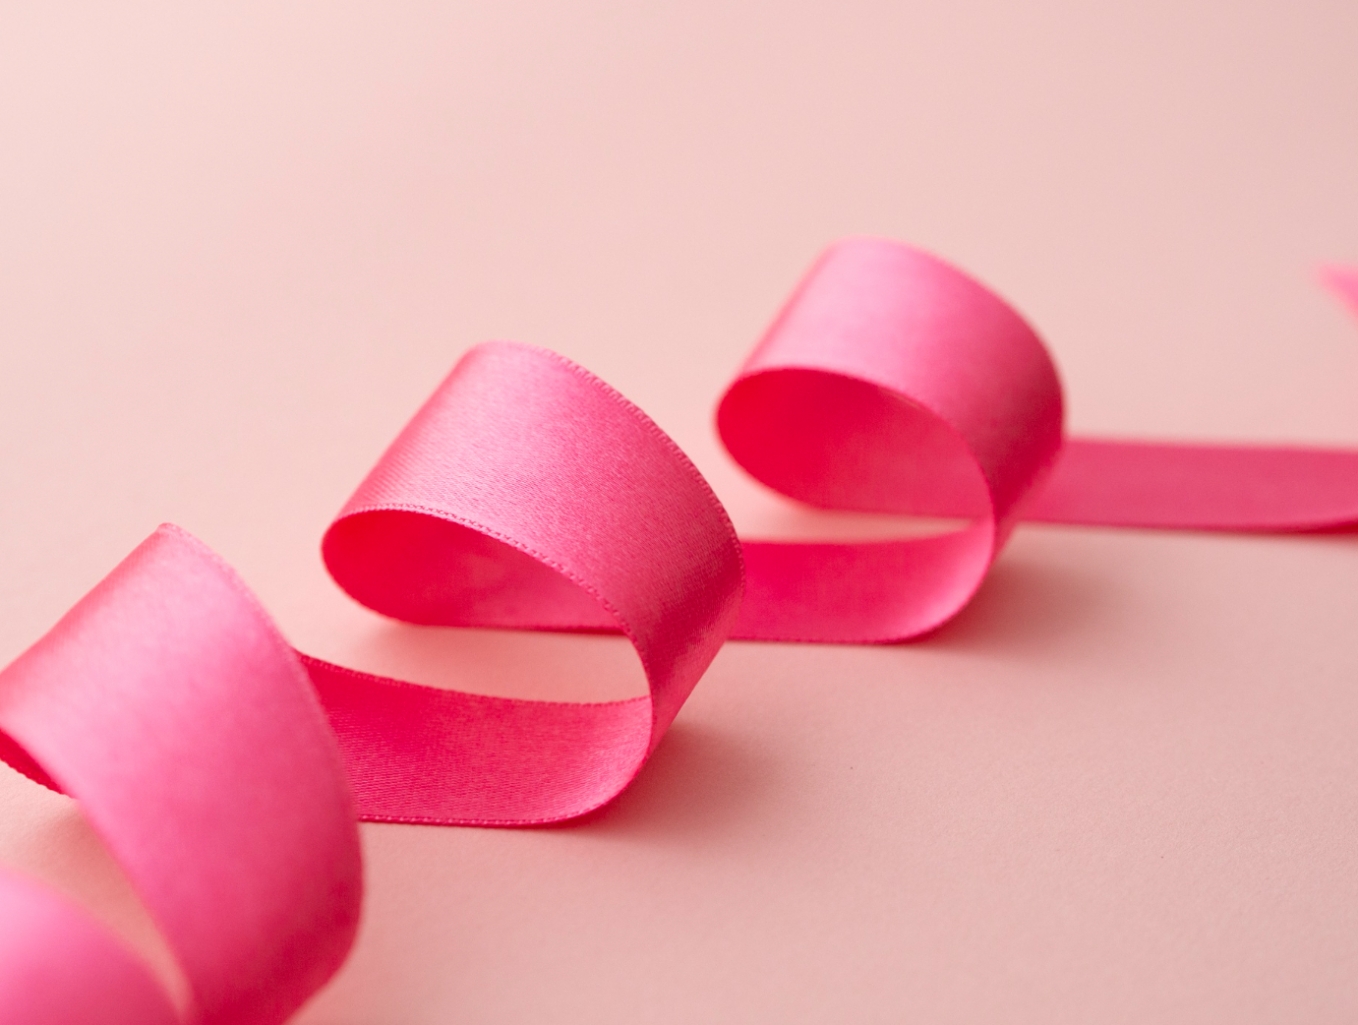 Październik w różowym kolorze: Nowa placówka onkologiczna otwiera drzwi w walce z rakiem piersi